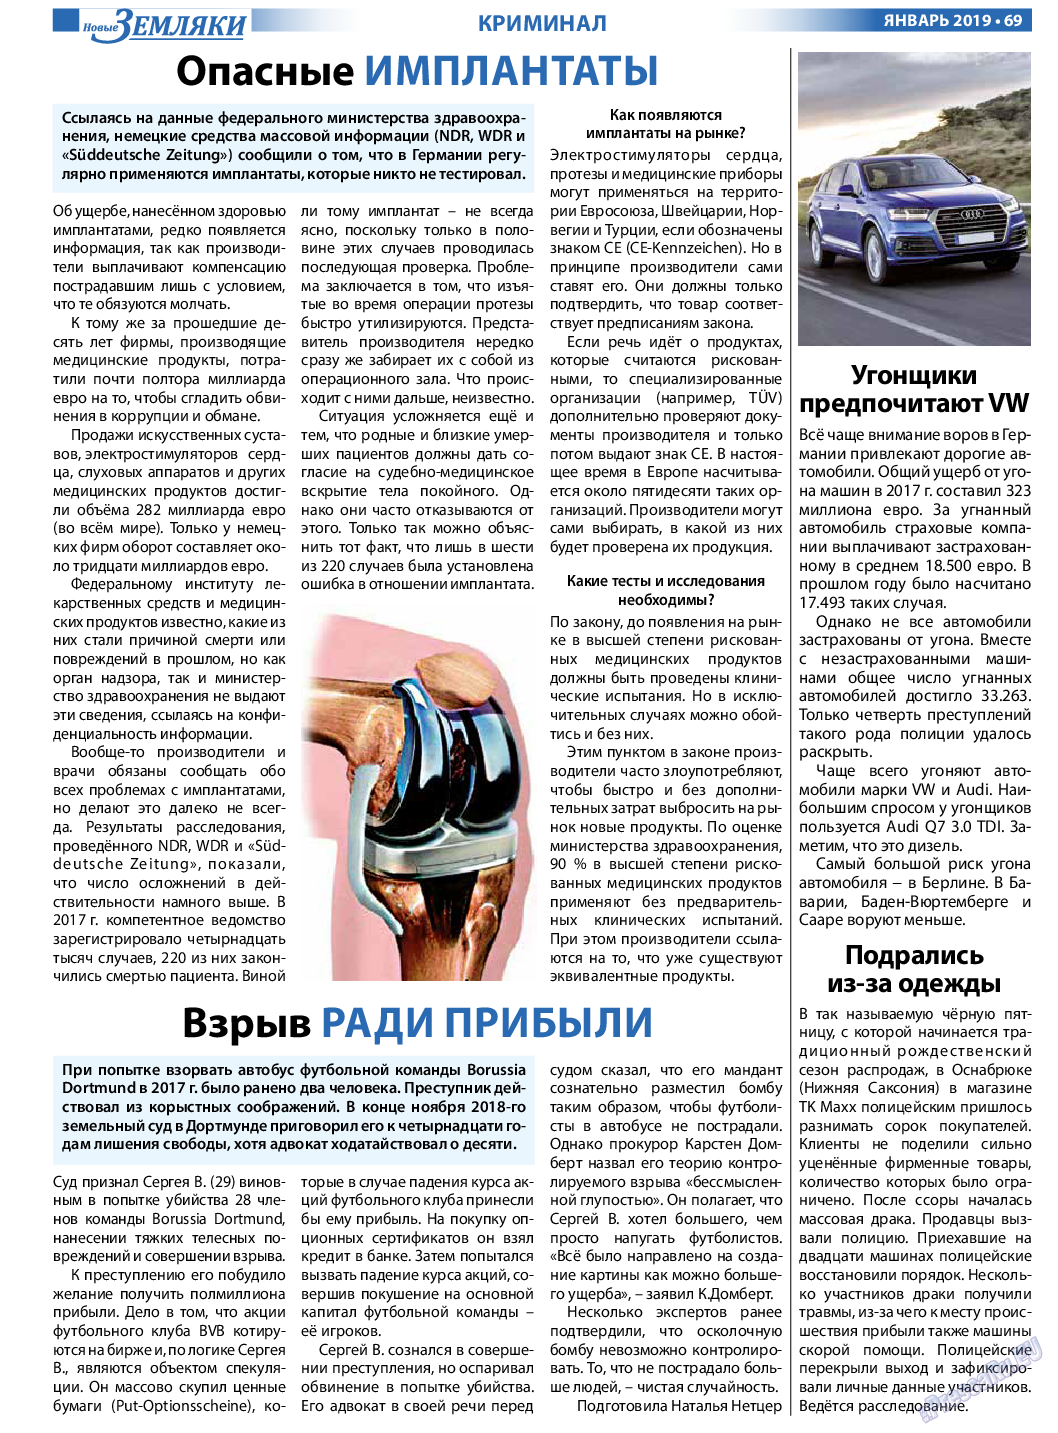 Новые Земляки, газета. 2019 №1 стр.69